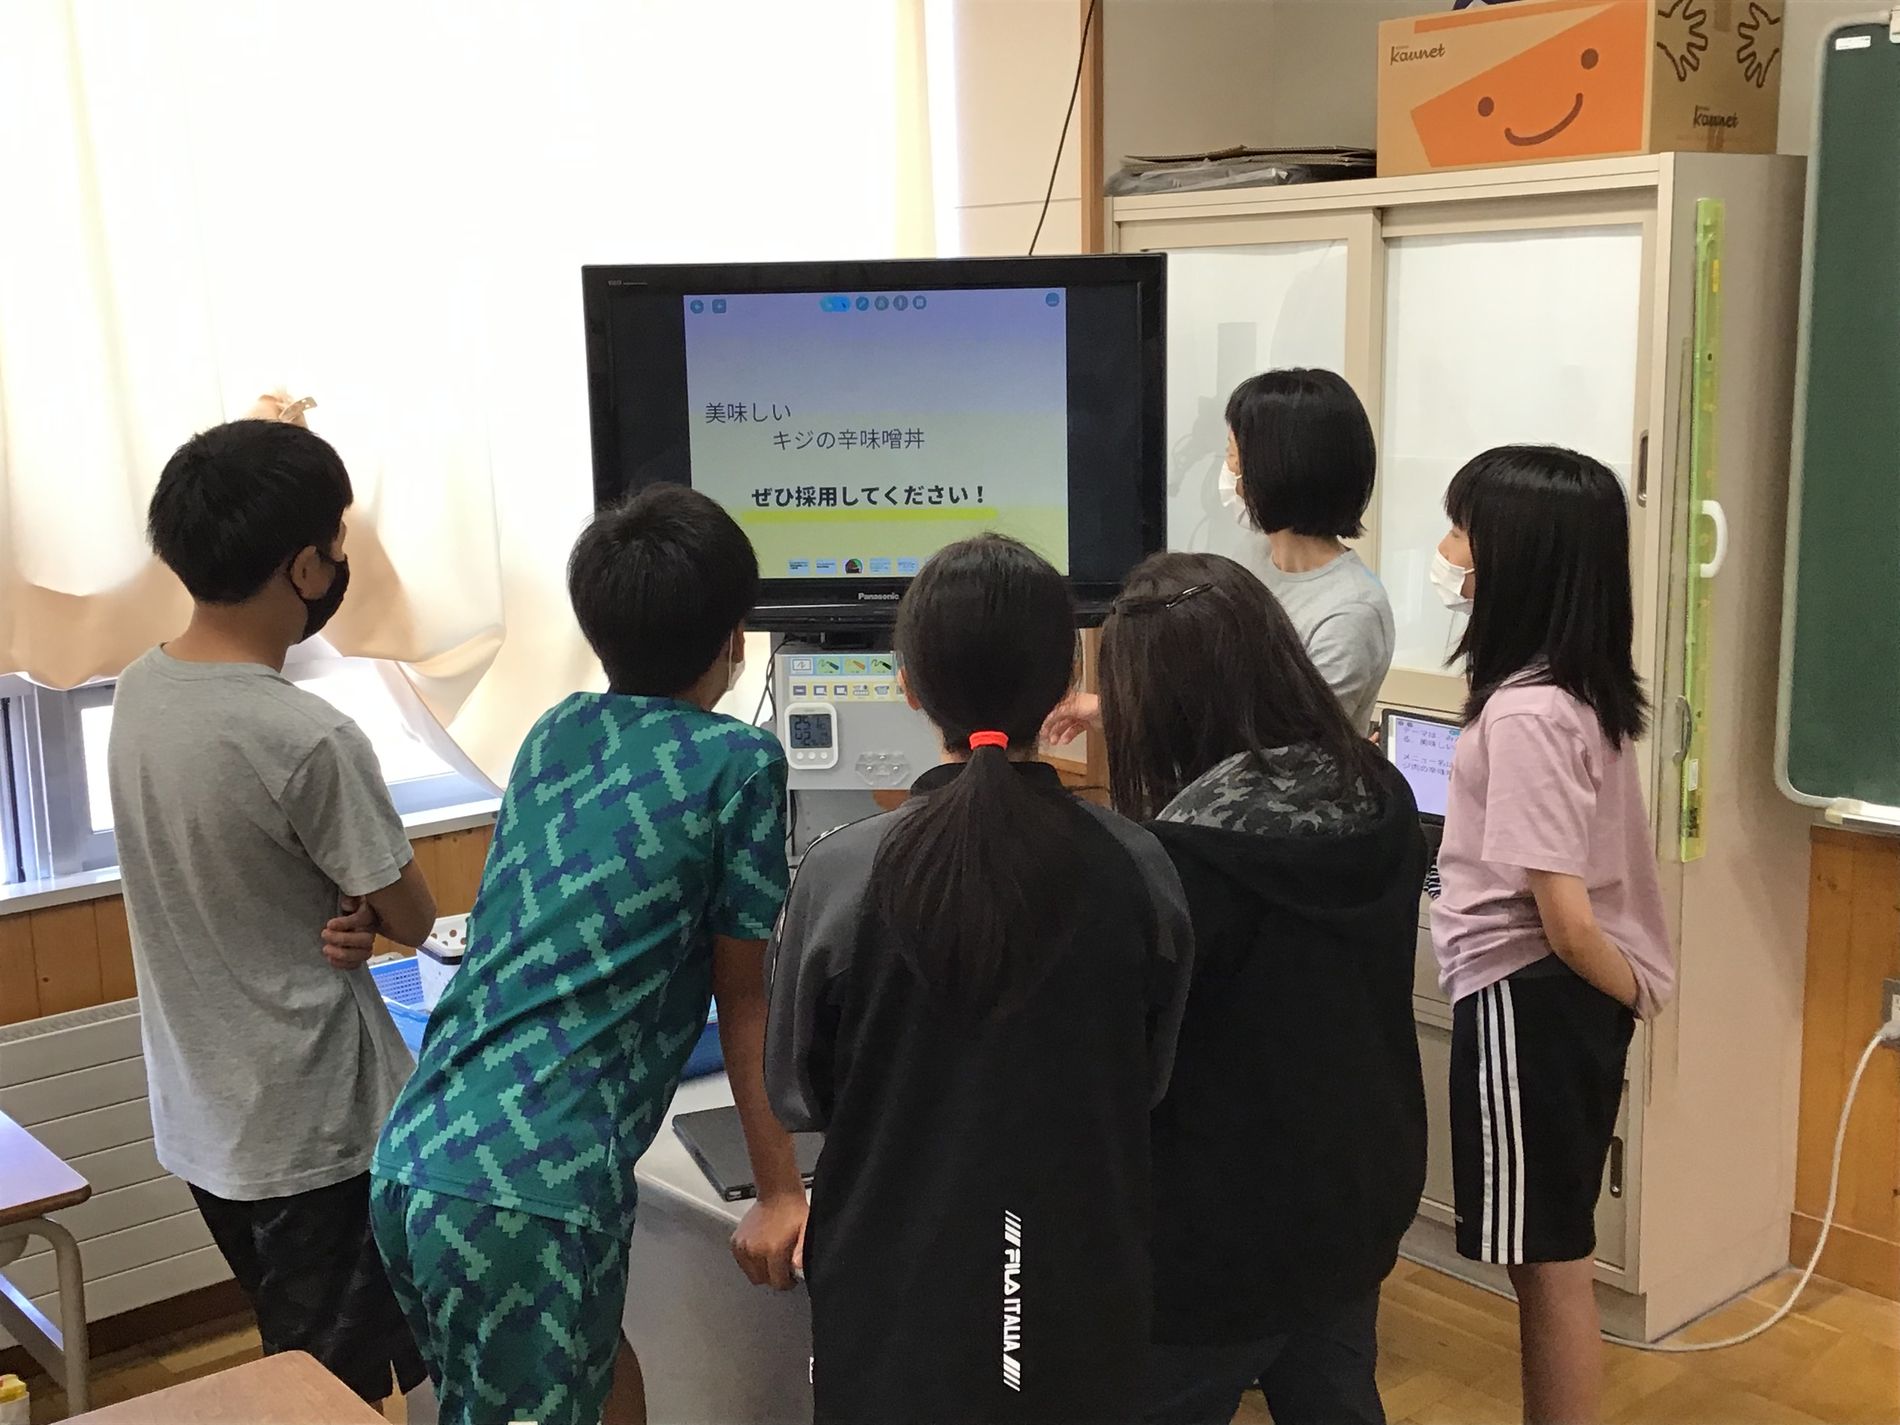 教室のモニターに映るメッセージを近くで見ている子供たちの写真